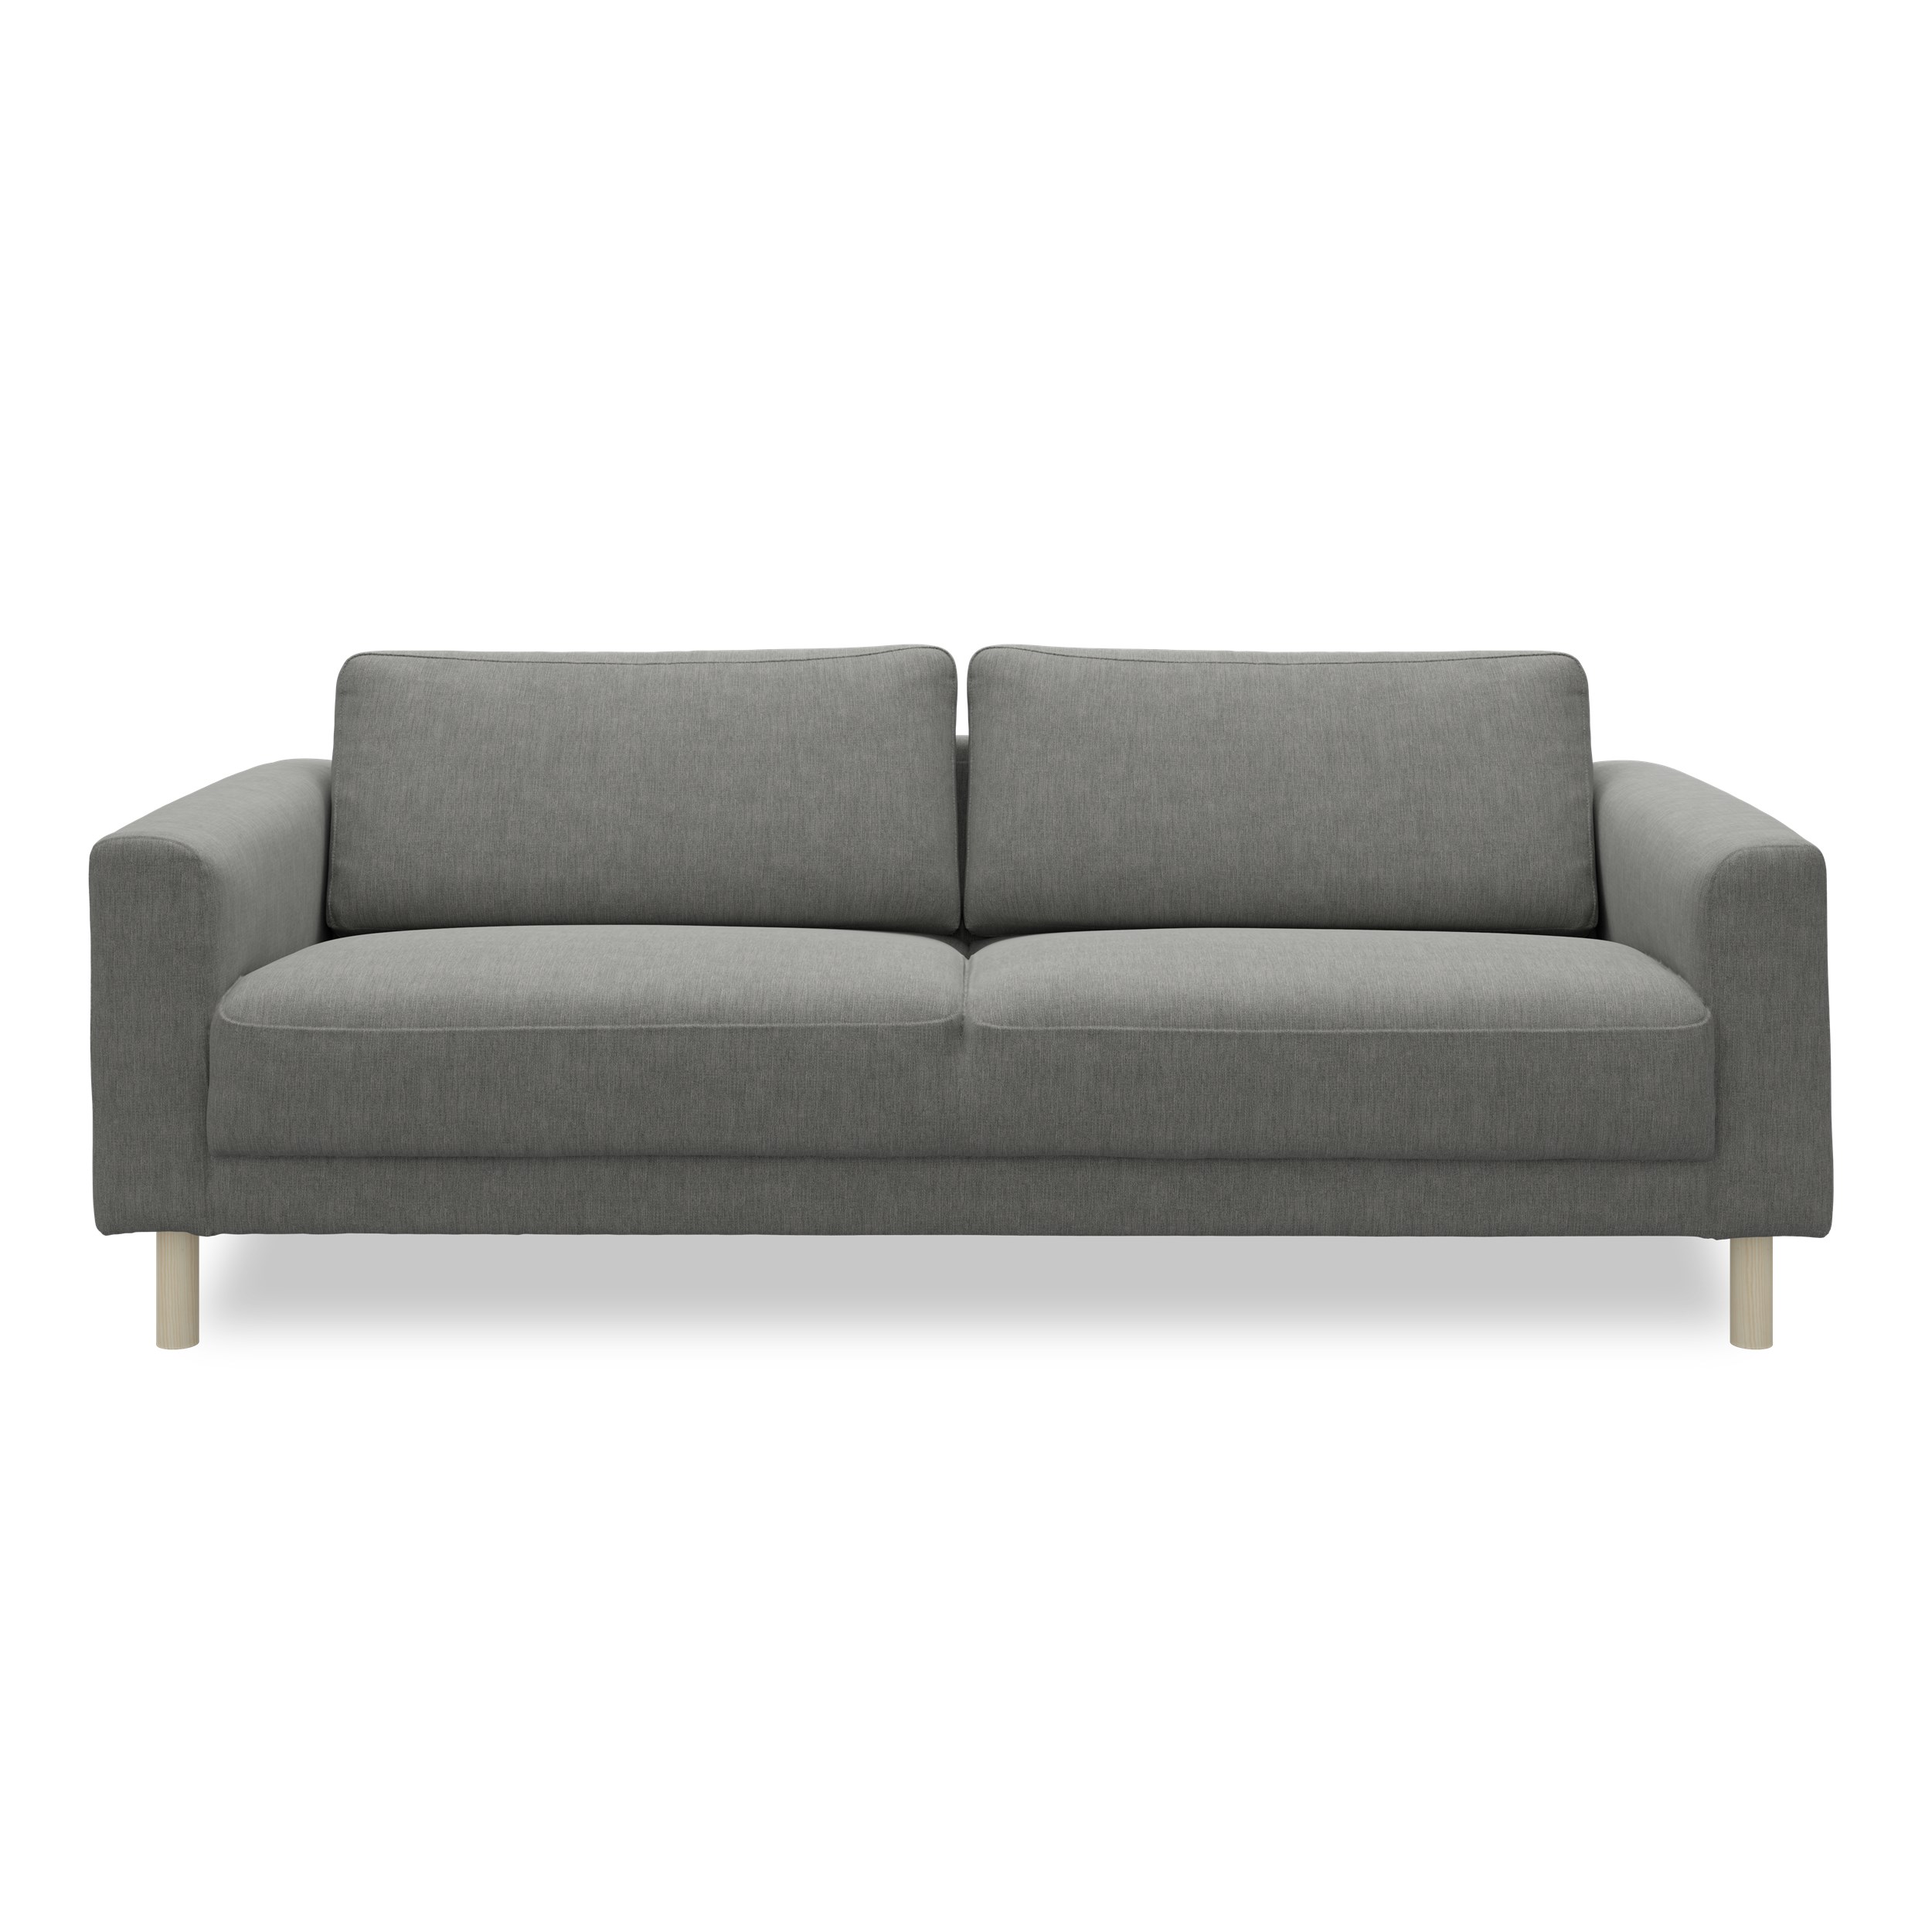 Cleveland 3 pers Sofa - Soft 450 Grey stof, Ben i hvidolieret fyrretræ og sæde i polyetherskum, ryg i polyetherskum